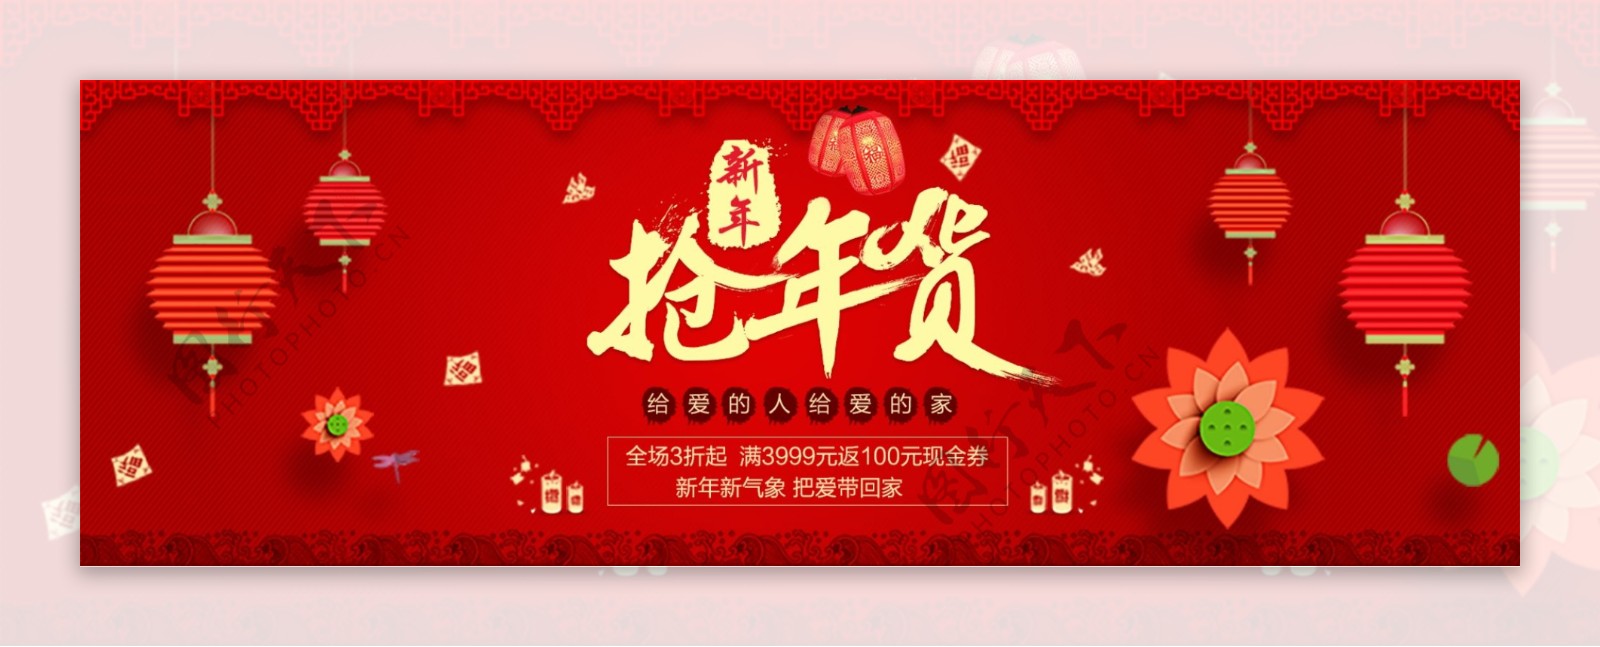 红色灯笼抢年货年货节海报促销banner